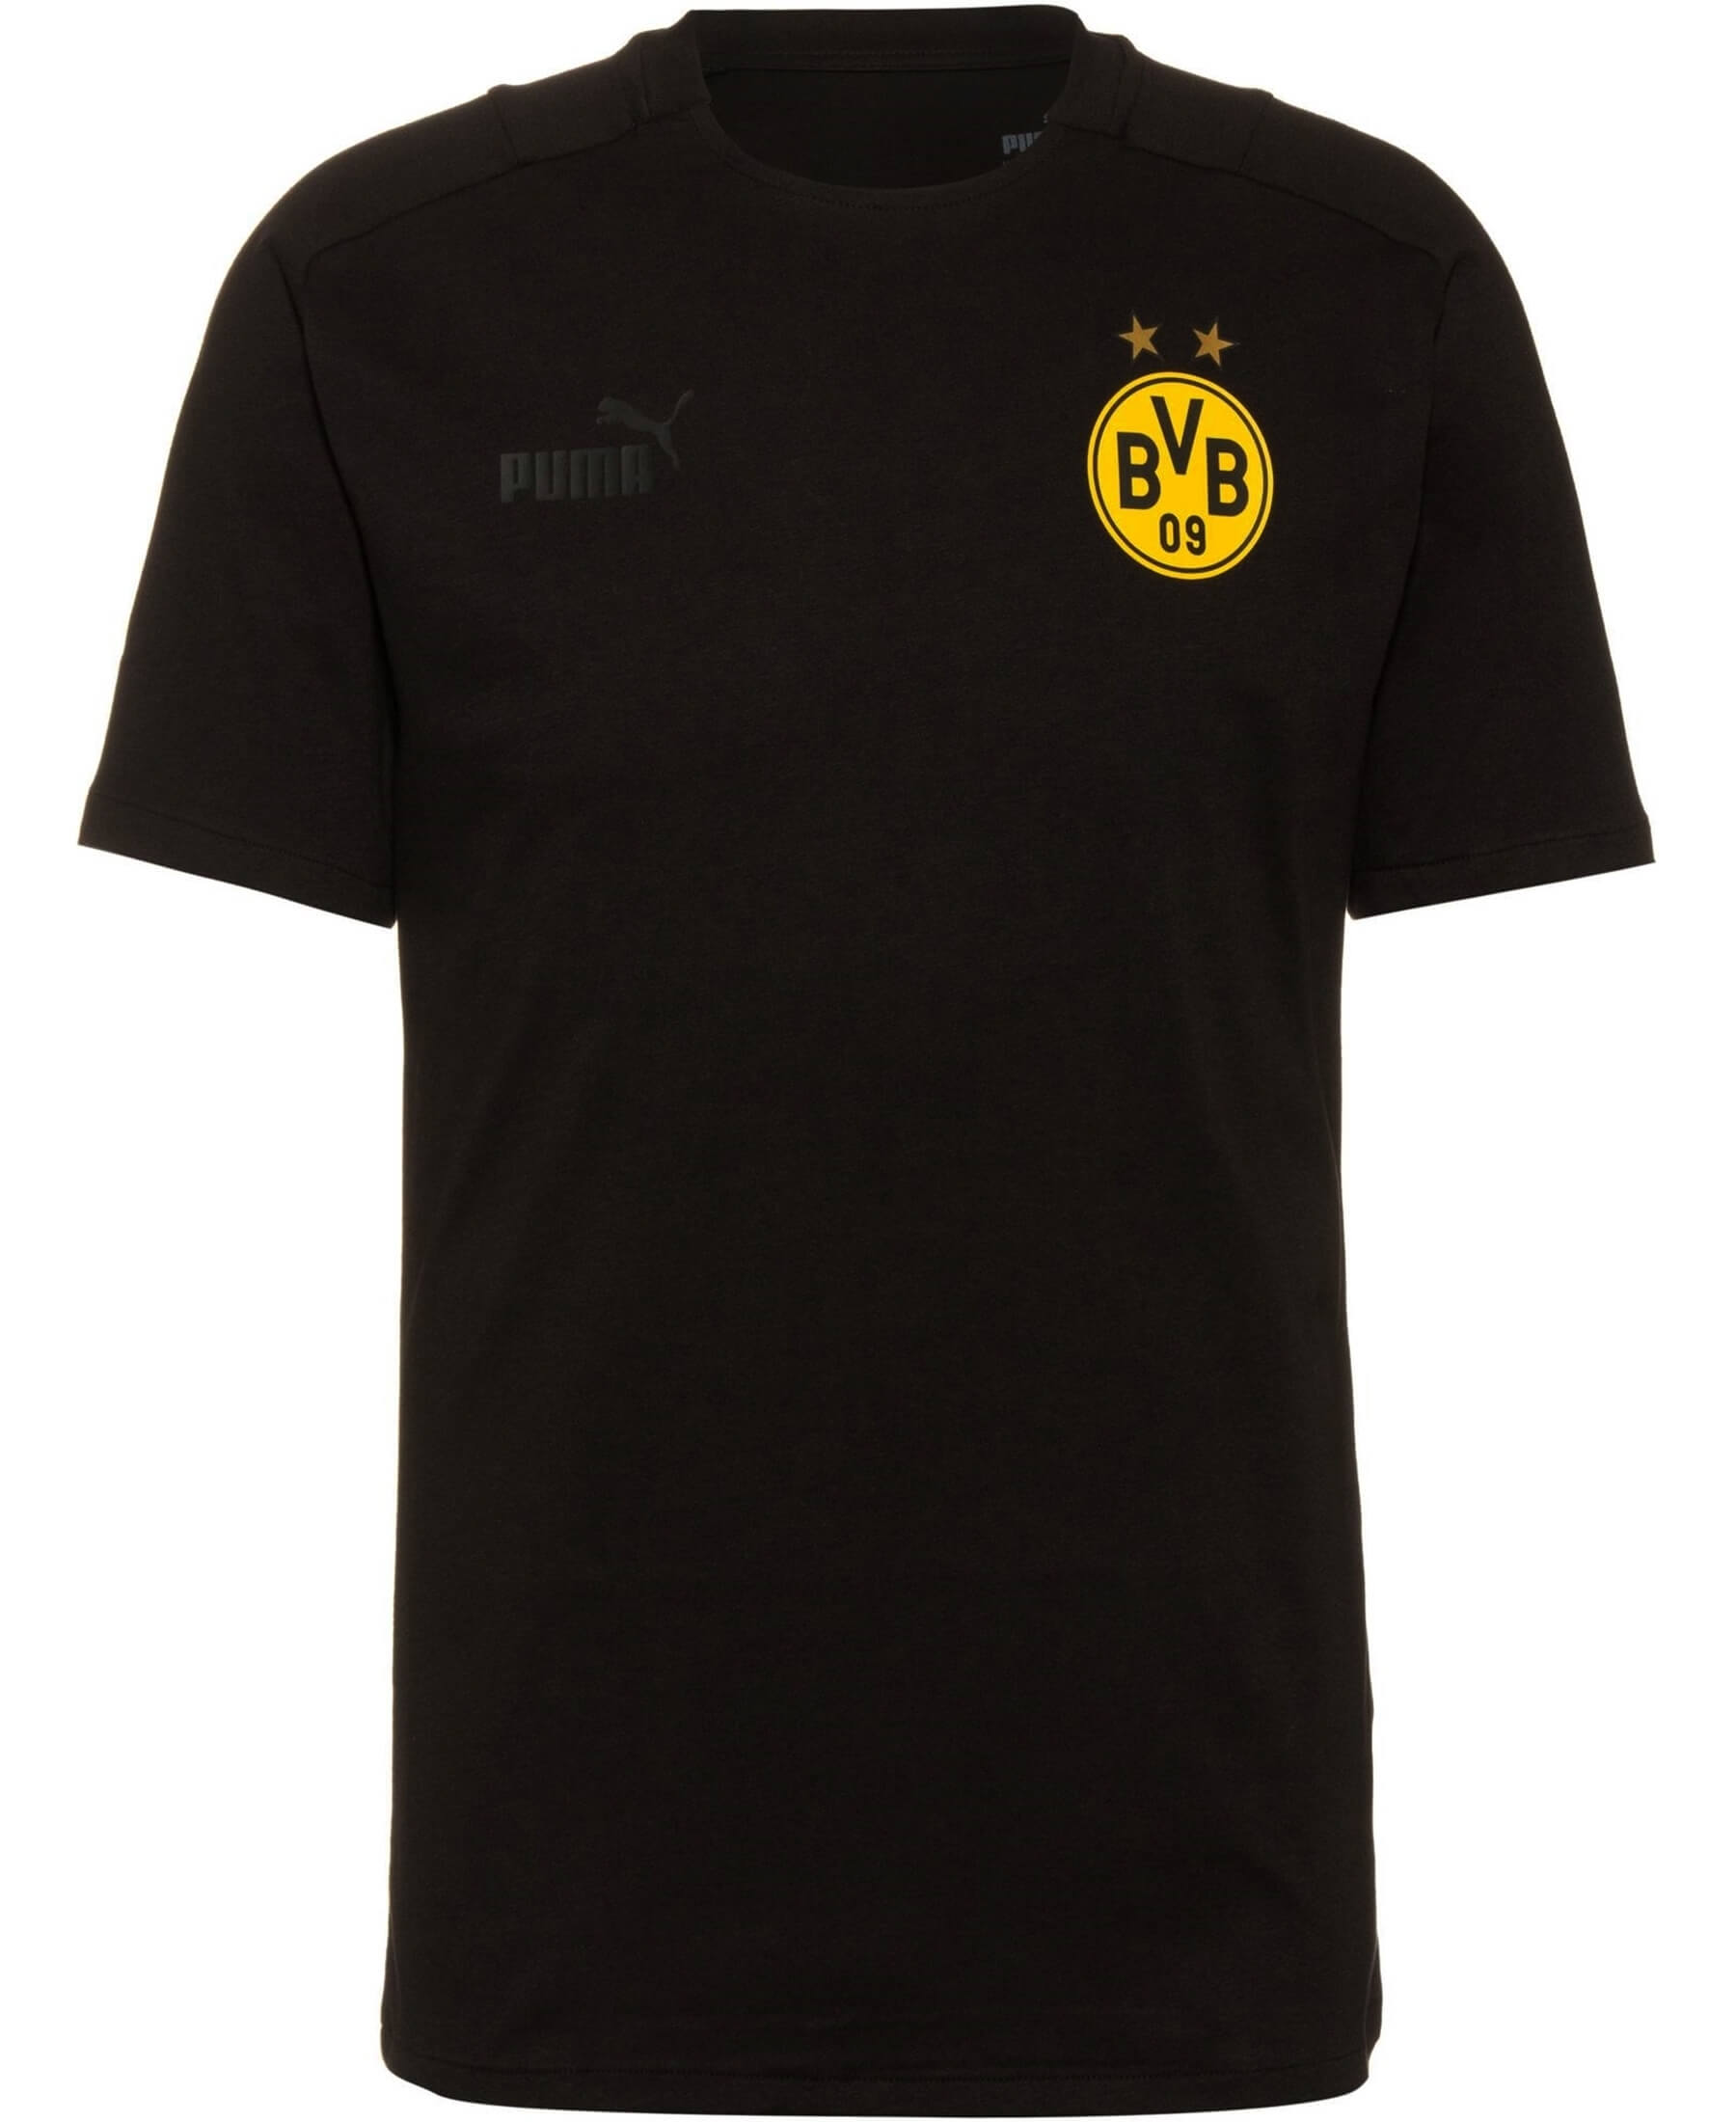 PUMA Borussia Dortmund BVB Casuals T-Shirt - Offizielles T-Shirt des BVB mit Logo. Stylisches Design, verschiedene Größen. Perfekt für Fans im Alltag, beim Sport oder im Stadion. Bestellen Sie jetzt das Borussia Dortmund BVB Casuals T-Shirt und zeigen Sie Ihre Fanliebe. Seien Sie Teil der gelben Wand!